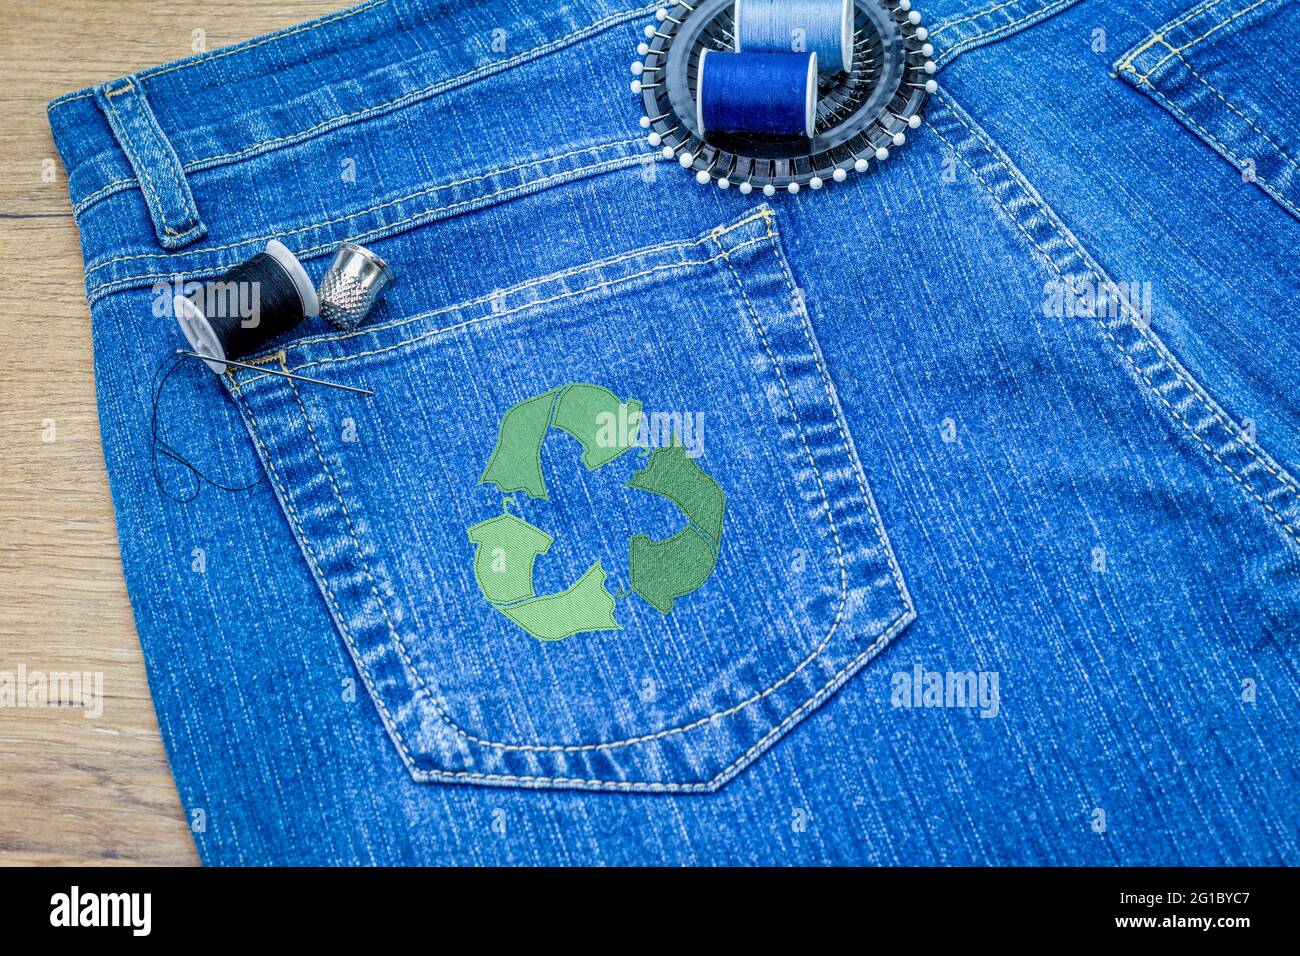 Recycling Kleidung Ikone auf Jeans, nachhaltige Mode Konzept, reparieren, recyceln, wiederverwenden Kleidung und Textilien, um Abfall zu reduzieren Stockfoto